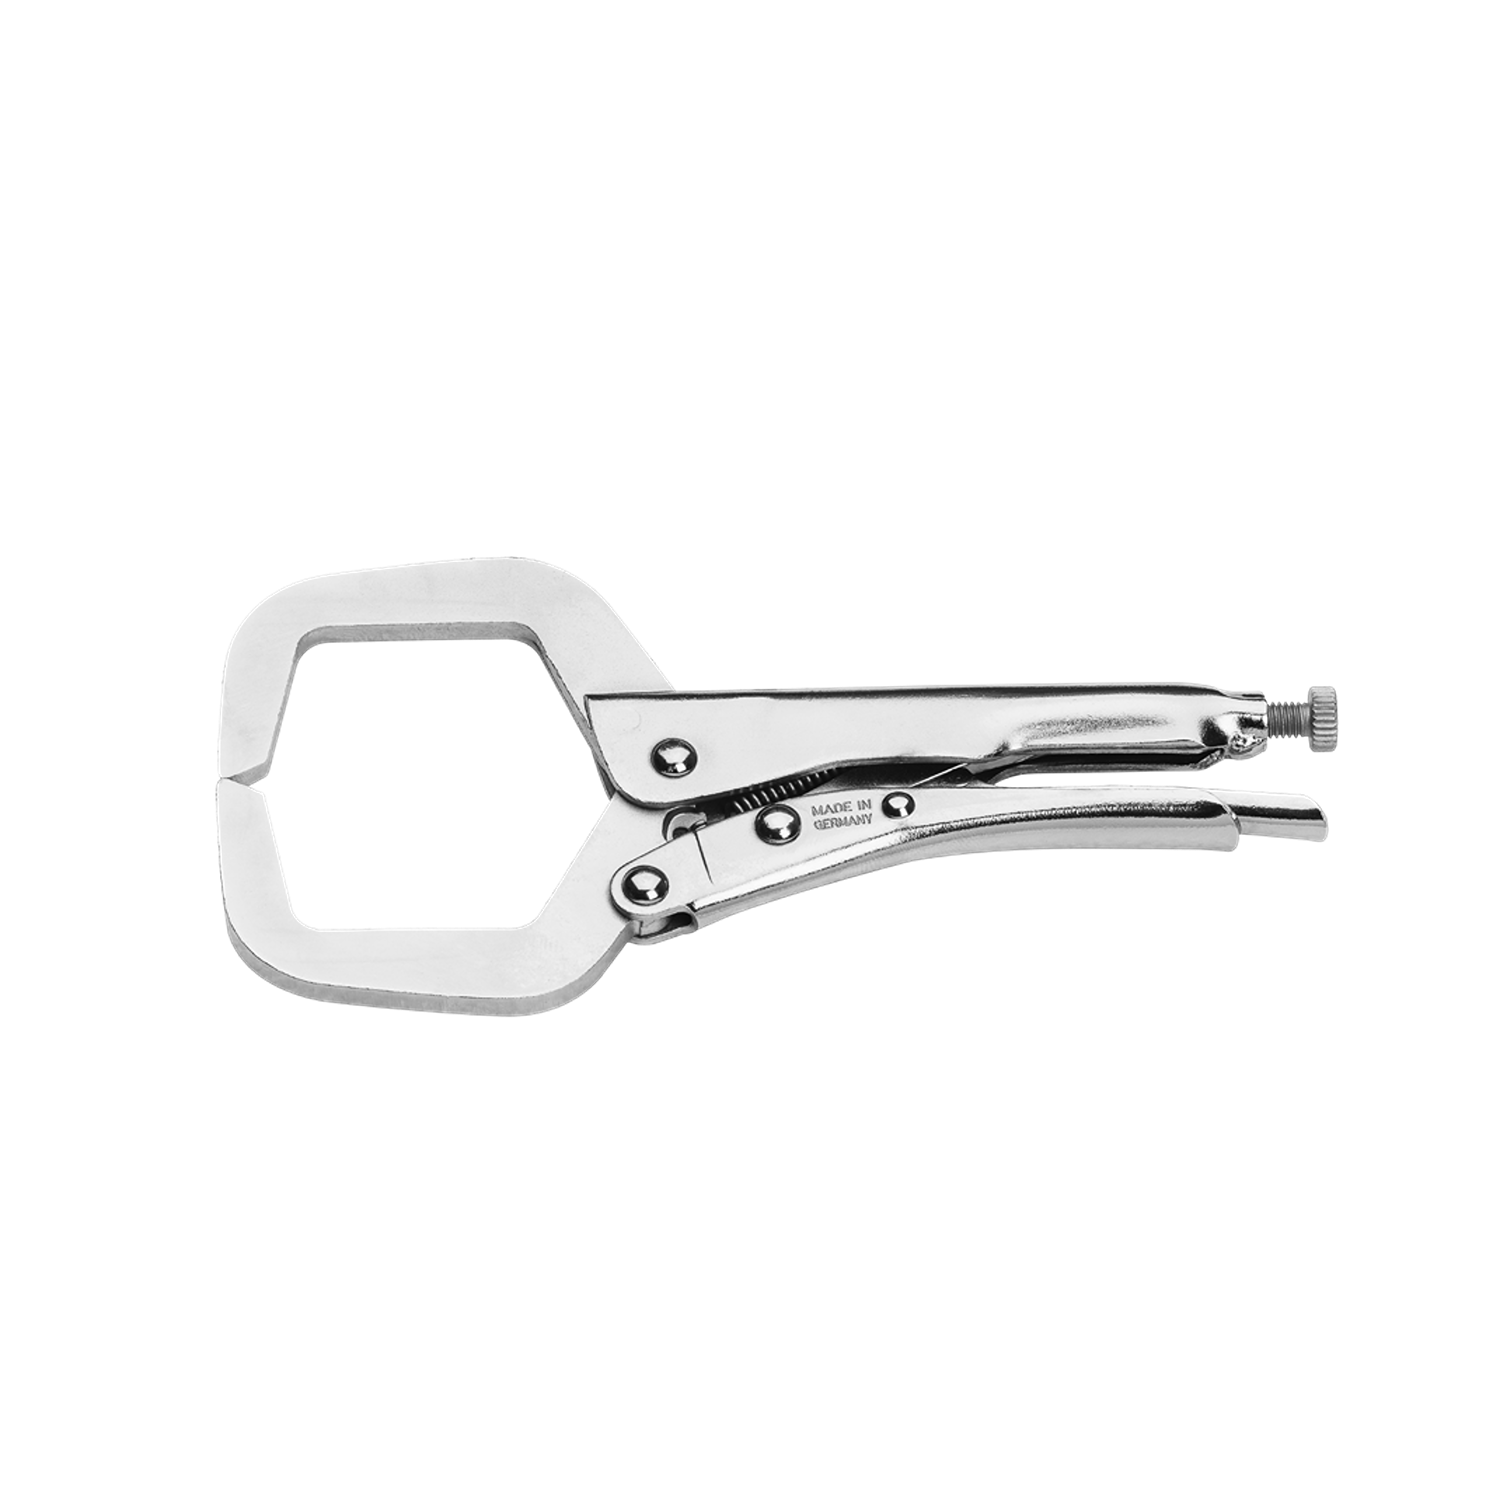 ELORA 507-165S C-Clamp Grip Plier (ELORA Tools) - Premium C-Clamp Grip Plier from ELORA - Shop now at Yew Aik.